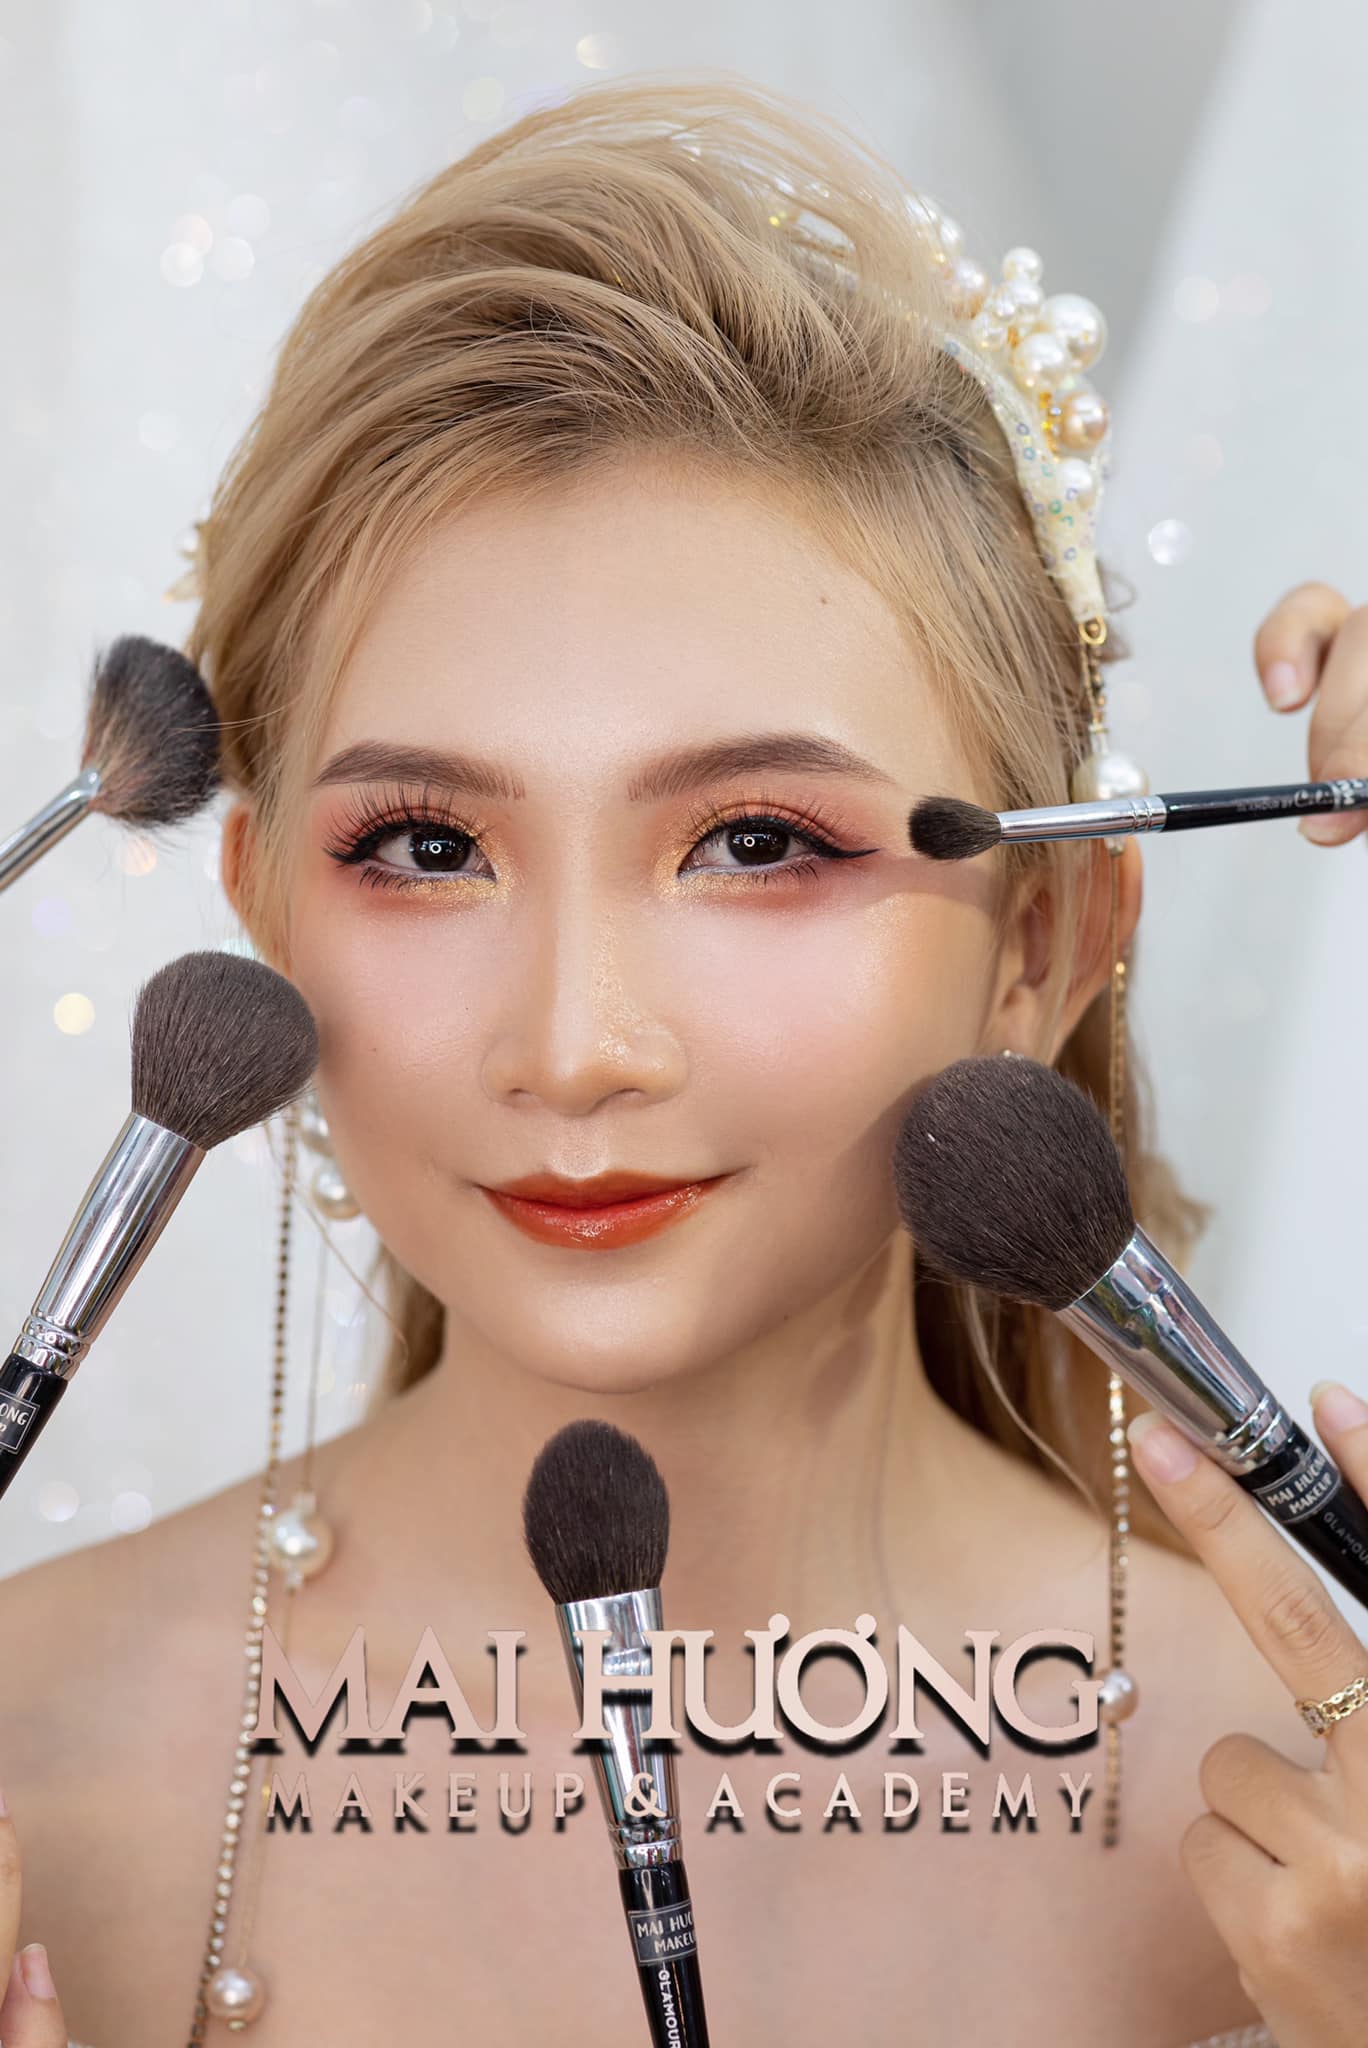 MAI HƯƠNG Makeup Academy - Đào tạo học viên trang điểm chuyên nghiệp ảnh 1